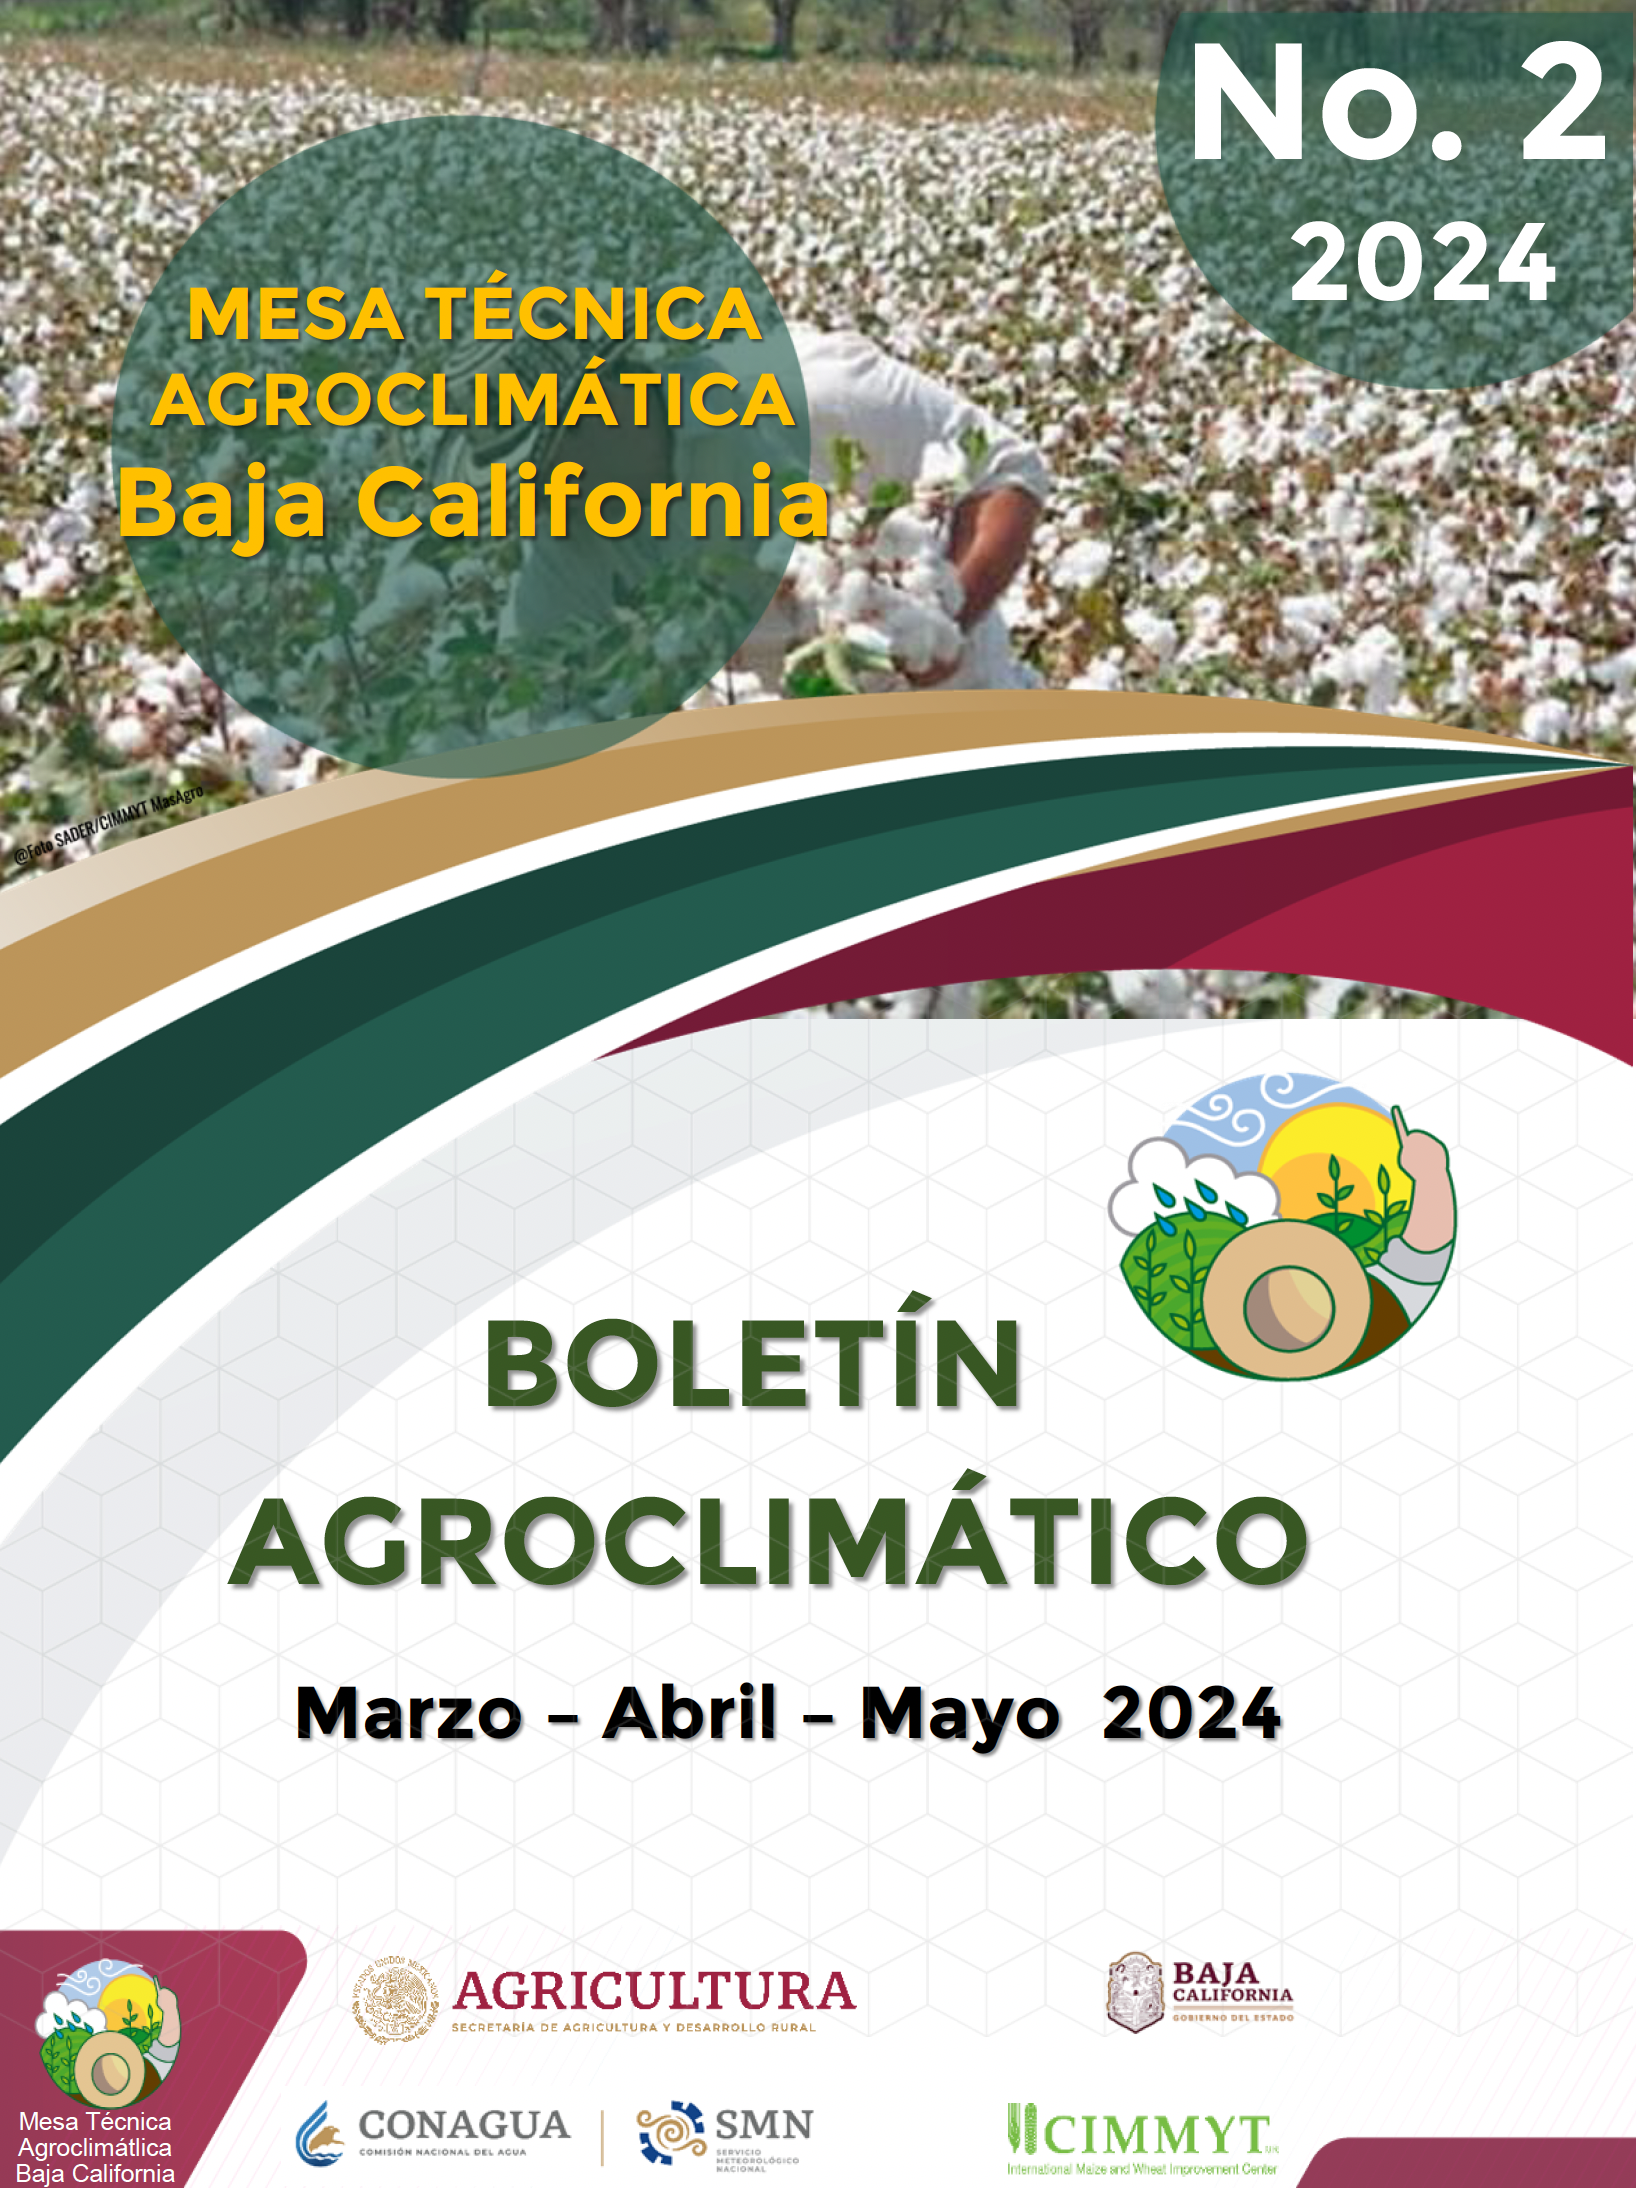 Boletín Agroclimático No. 2 de Baja California.